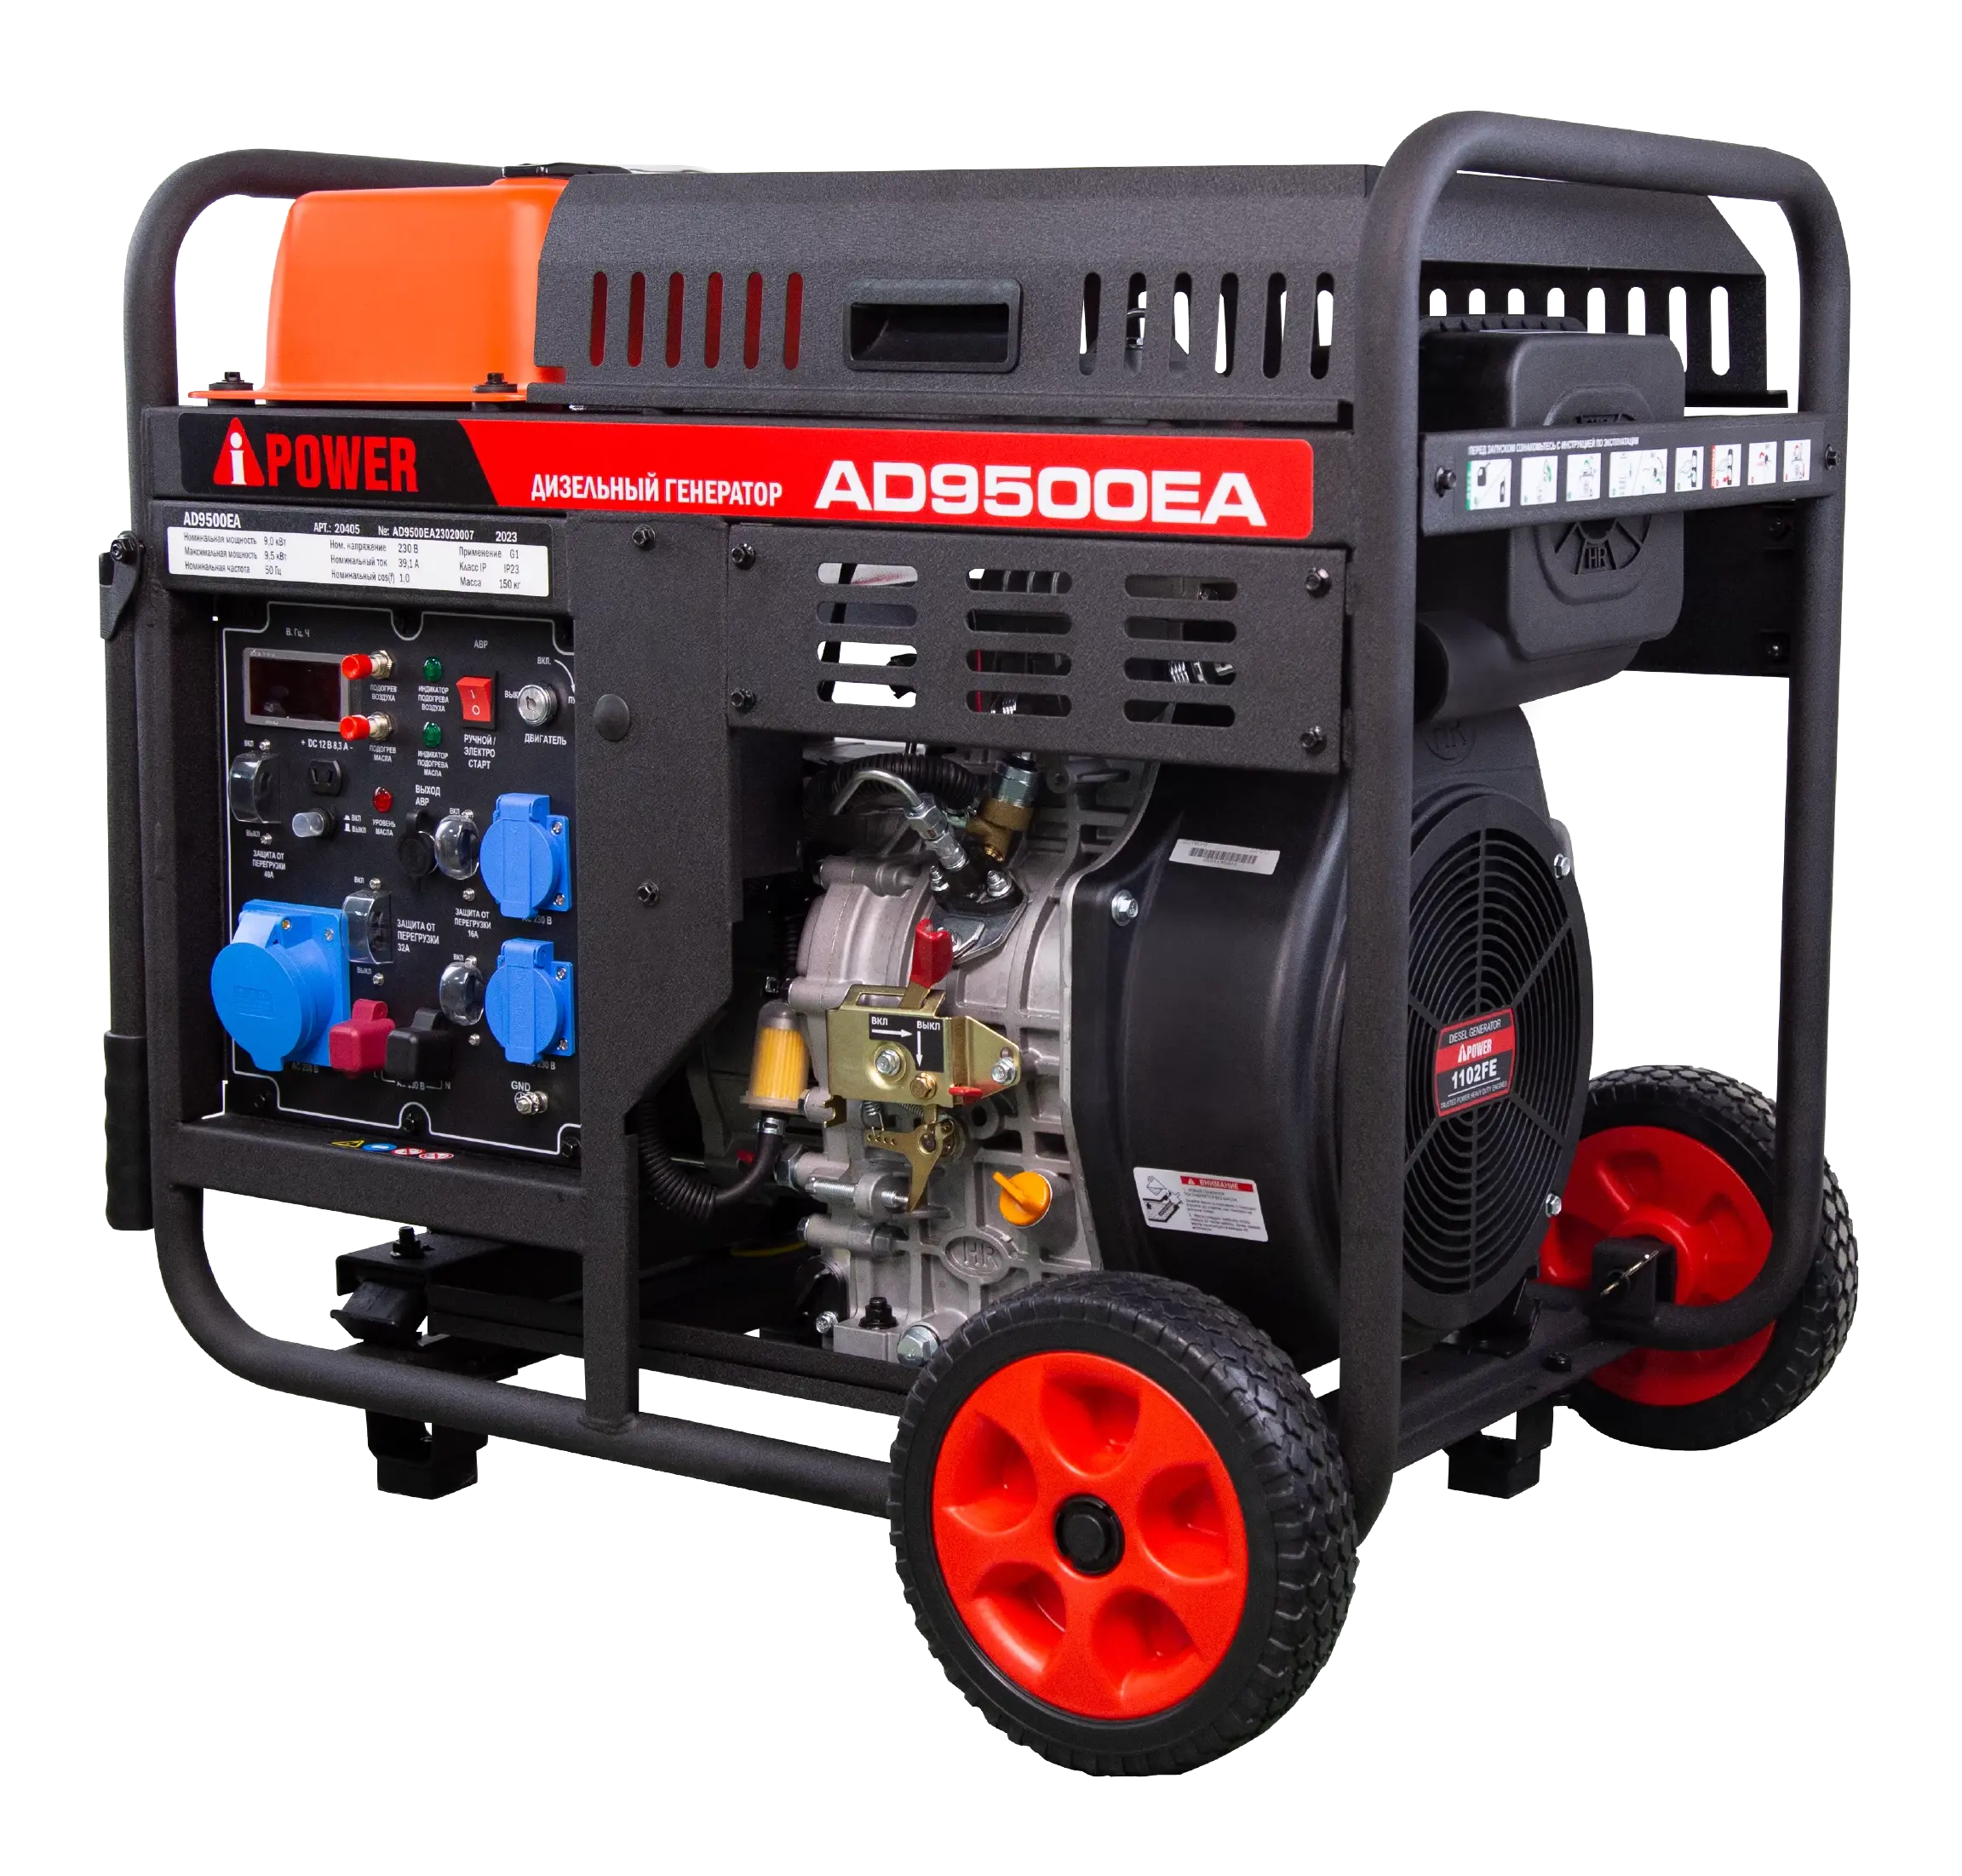 Дизельный генератор 9 кВт AD9500EA A-IPOWER Гарантия 2 года Официальный магазин